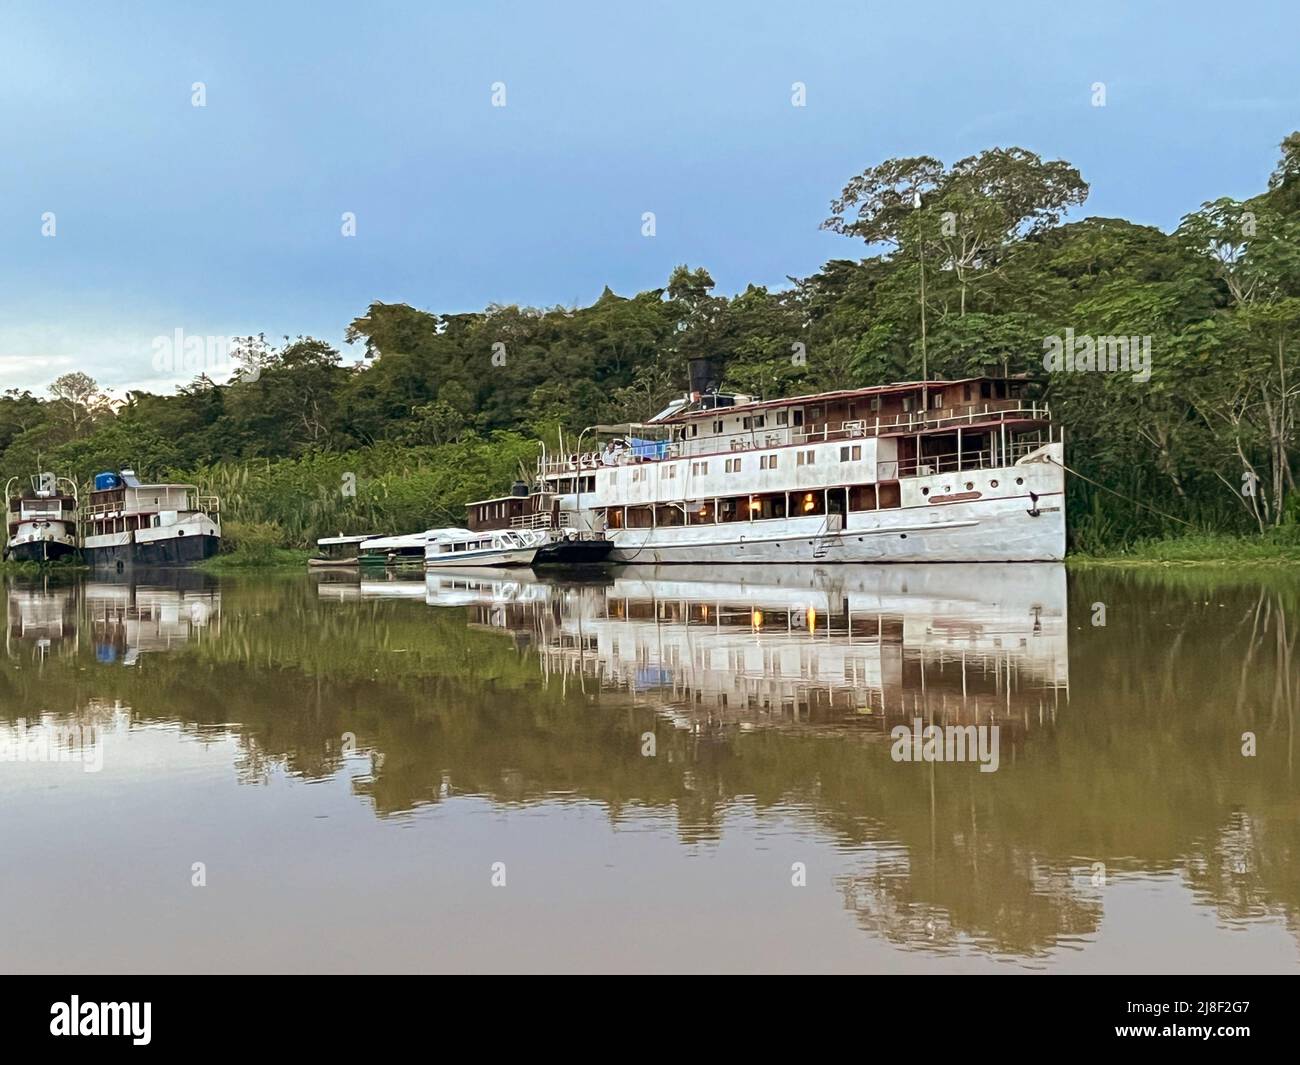 Bateau 'Rio Amazonas' construit en Écosse en 1899 pour le commerce du caoutchouc. Le bateau est amarré sur la rivière Yarapa, un affluent au large de la rivière Amazone. Banque D'Images